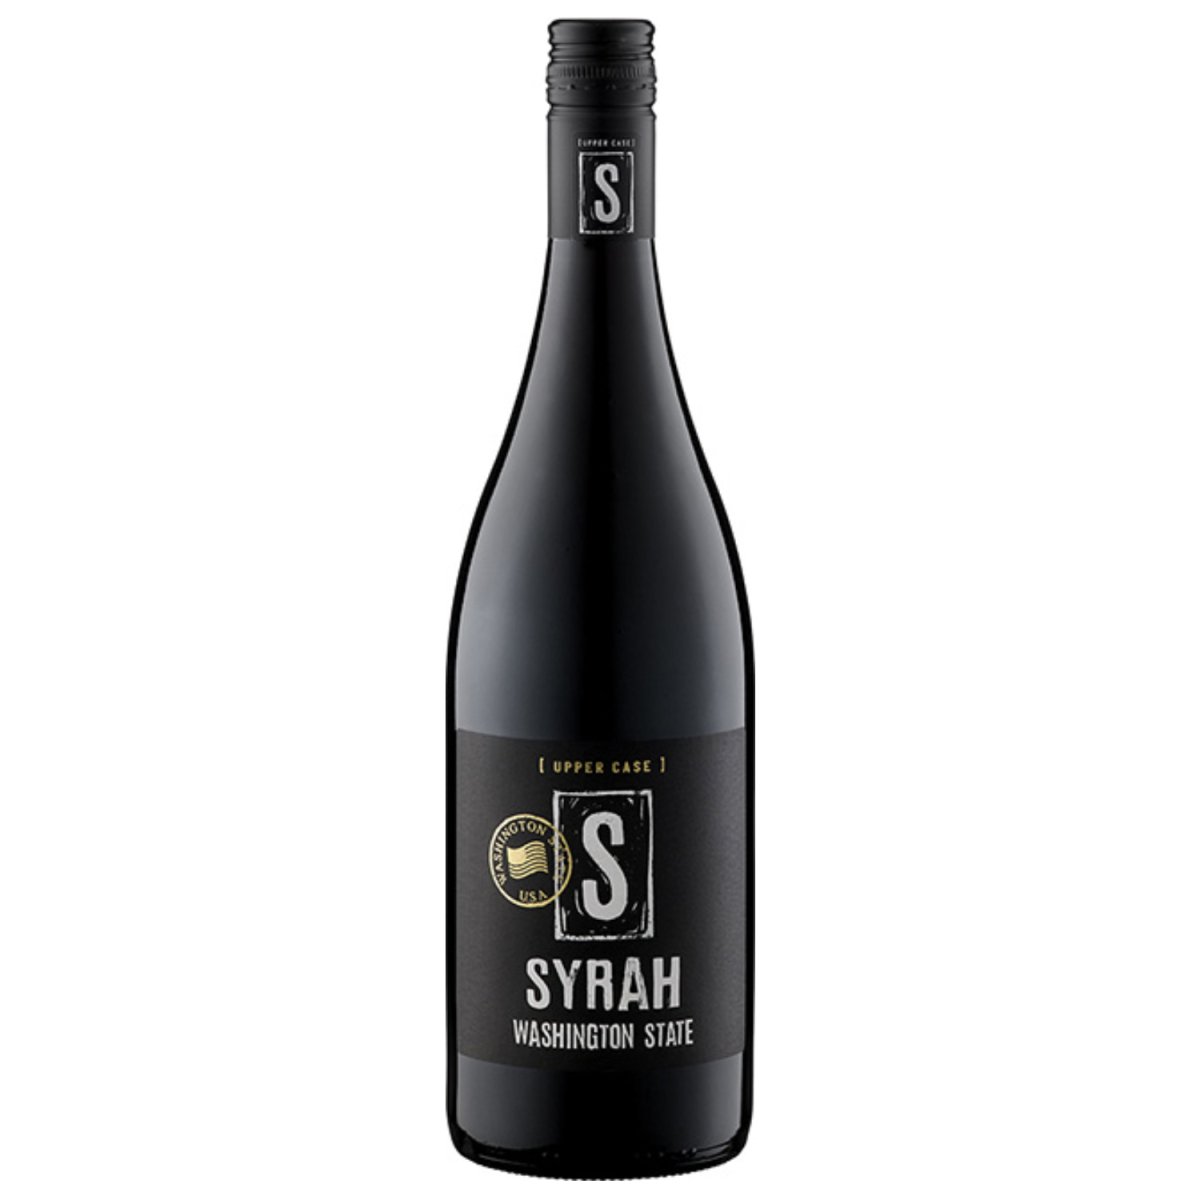 UPPER CASE S Syrah Washington State Rotwein Wein Trocken USA (12 x 0,75l) - Versanel -